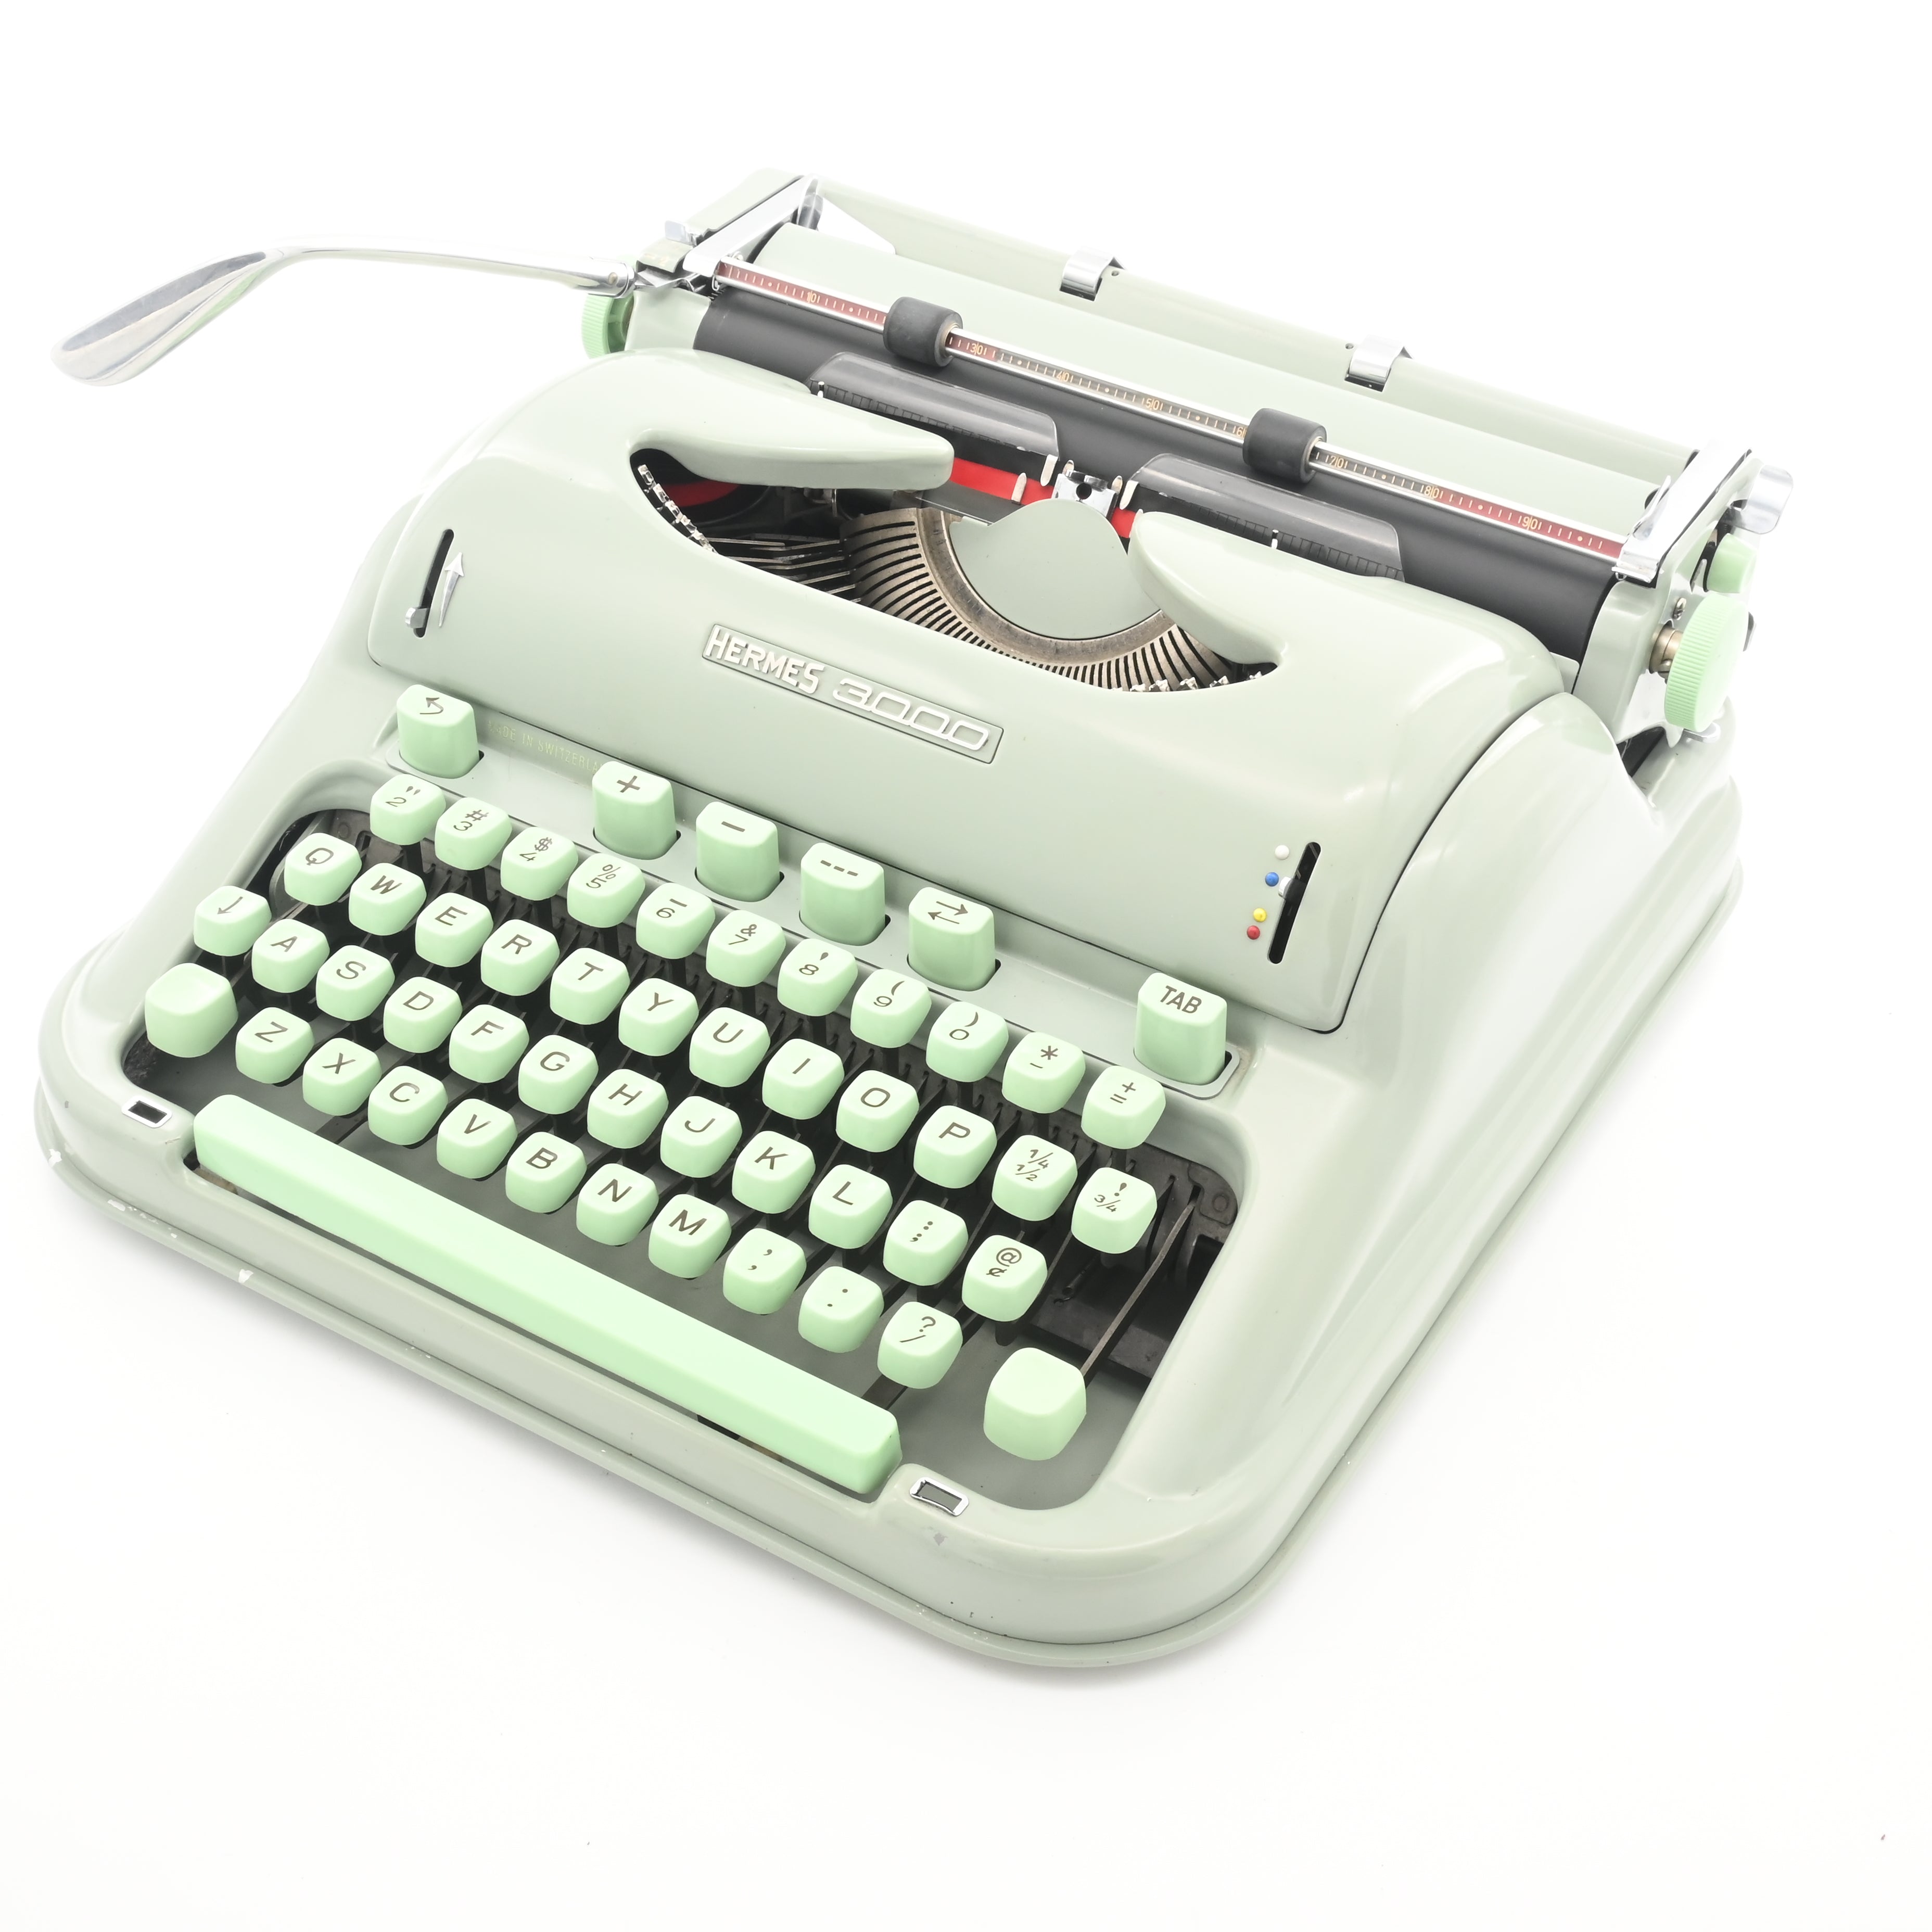 Hermes 3000 – Typewriter Review